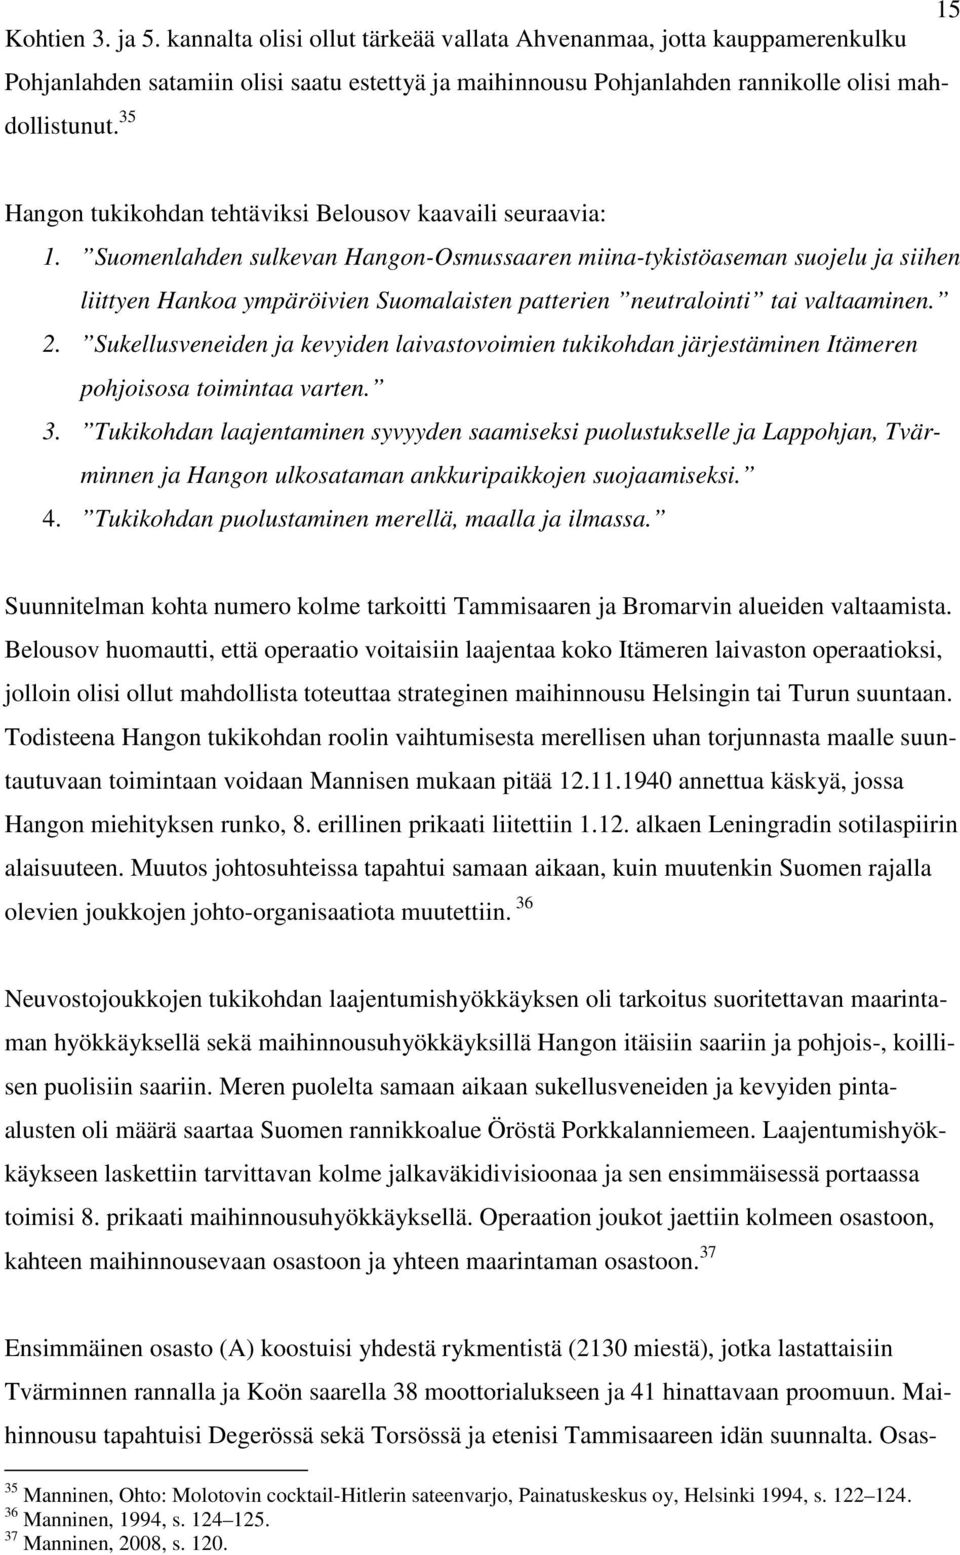 Suomenlahden sulkevan Hangon-Osmussaaren miina-tykistöaseman suojelu ja siihen liittyen Hankoa ympäröivien Suomalaisten patterien neutralointi tai valtaaminen. 2.